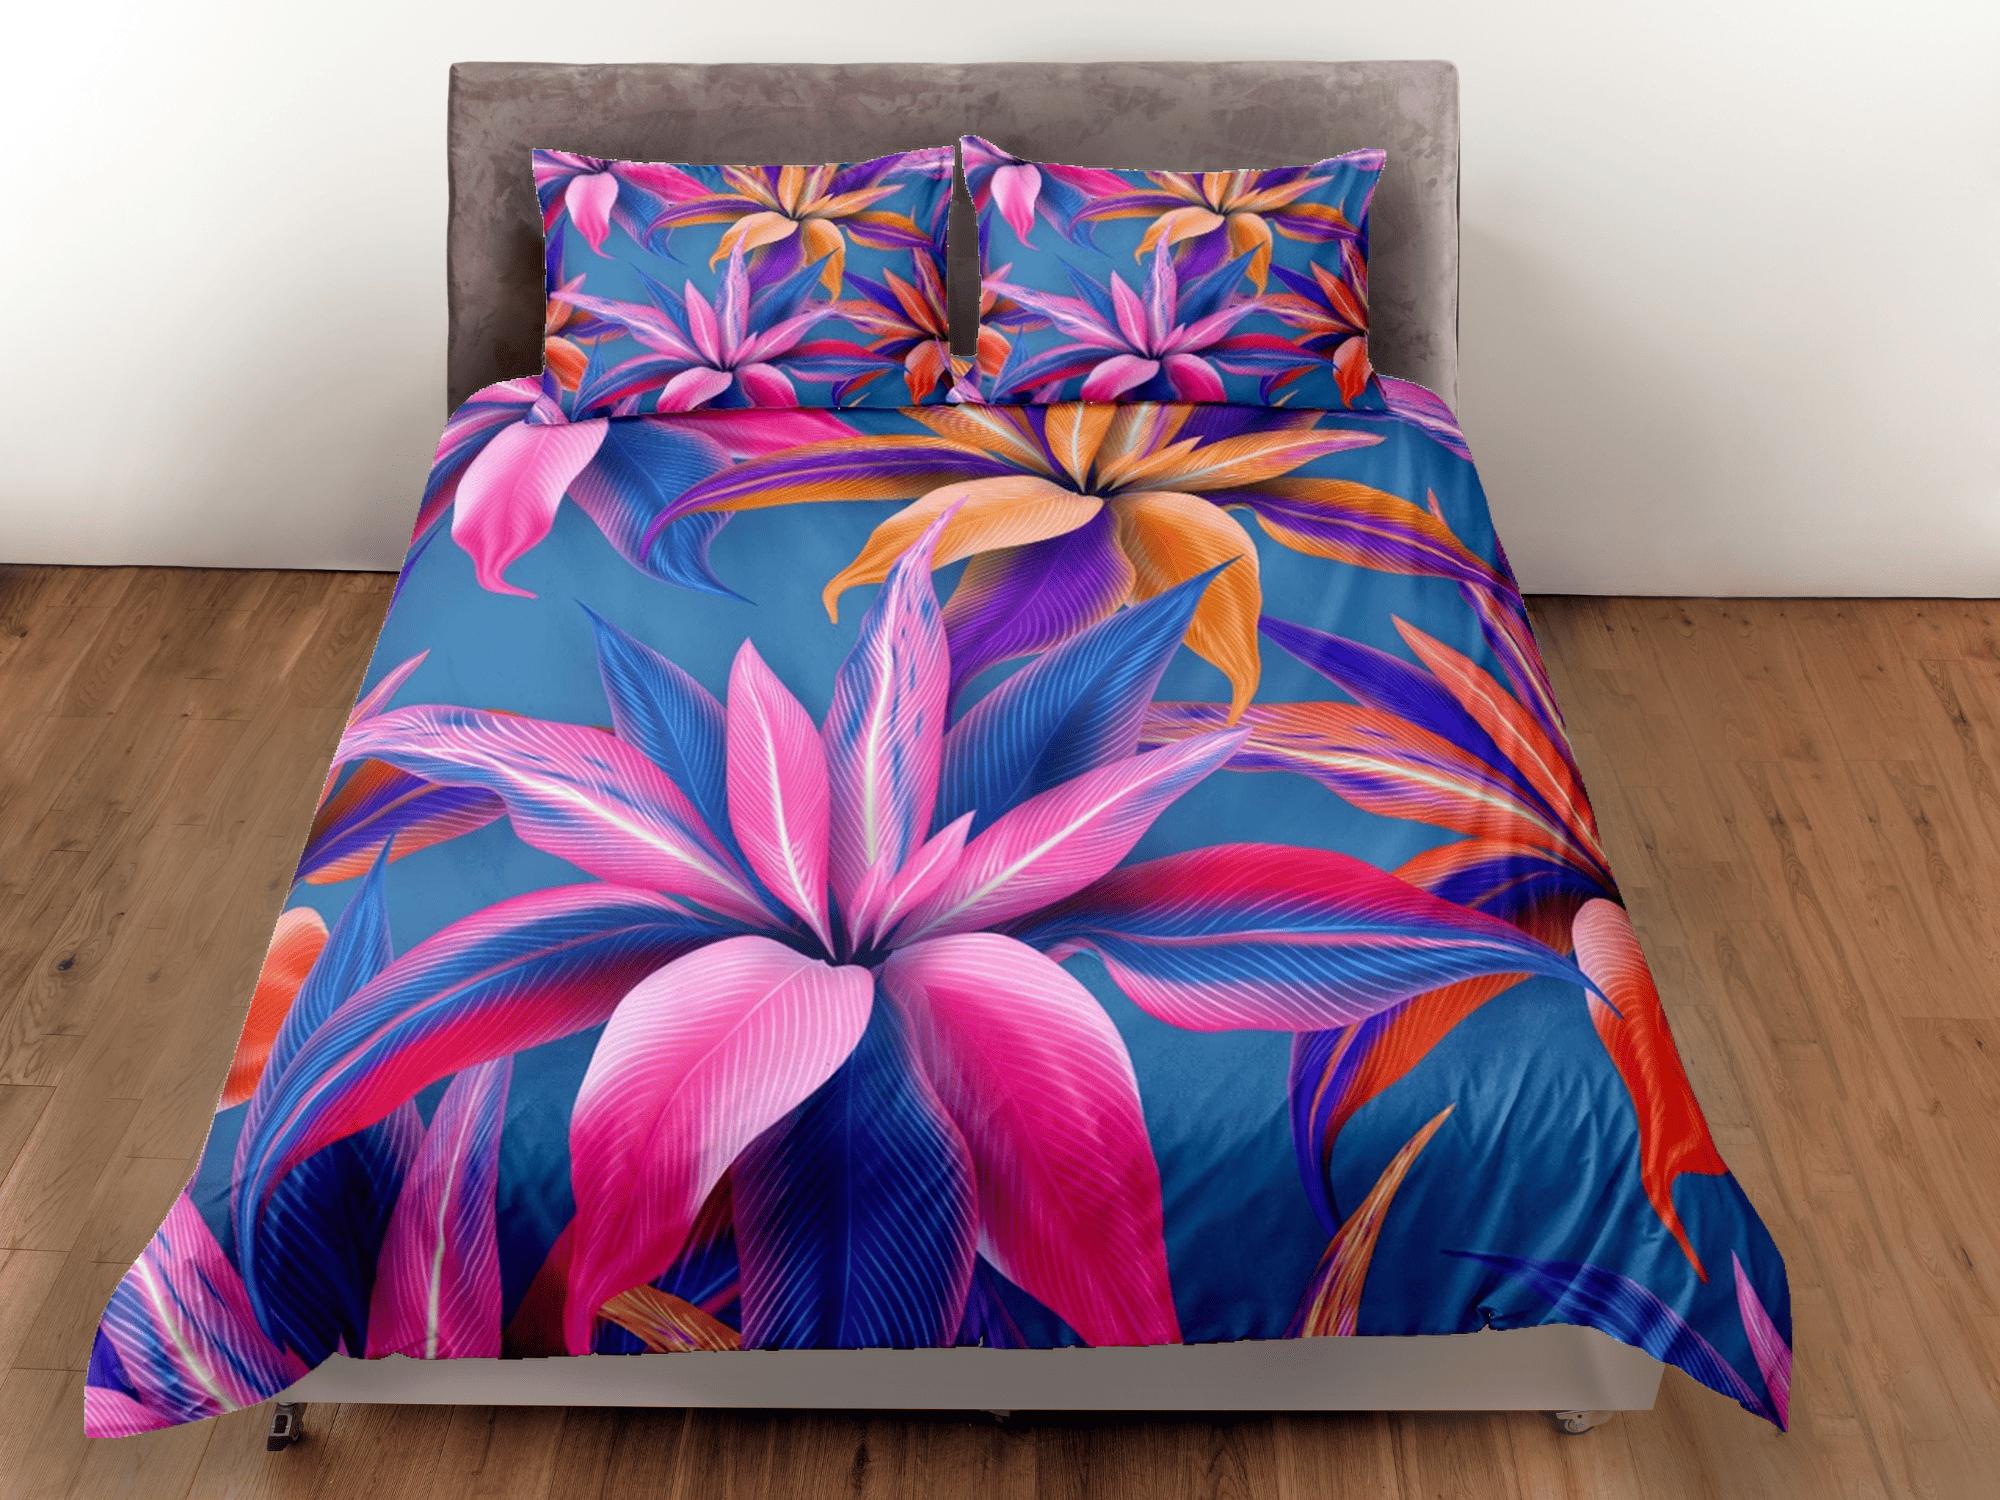 daintyduvet Purple floral bedding, luxury duvet cover queen, king, boho duvet, designer bedding, aesthetic bedding, maximalist full size bedding